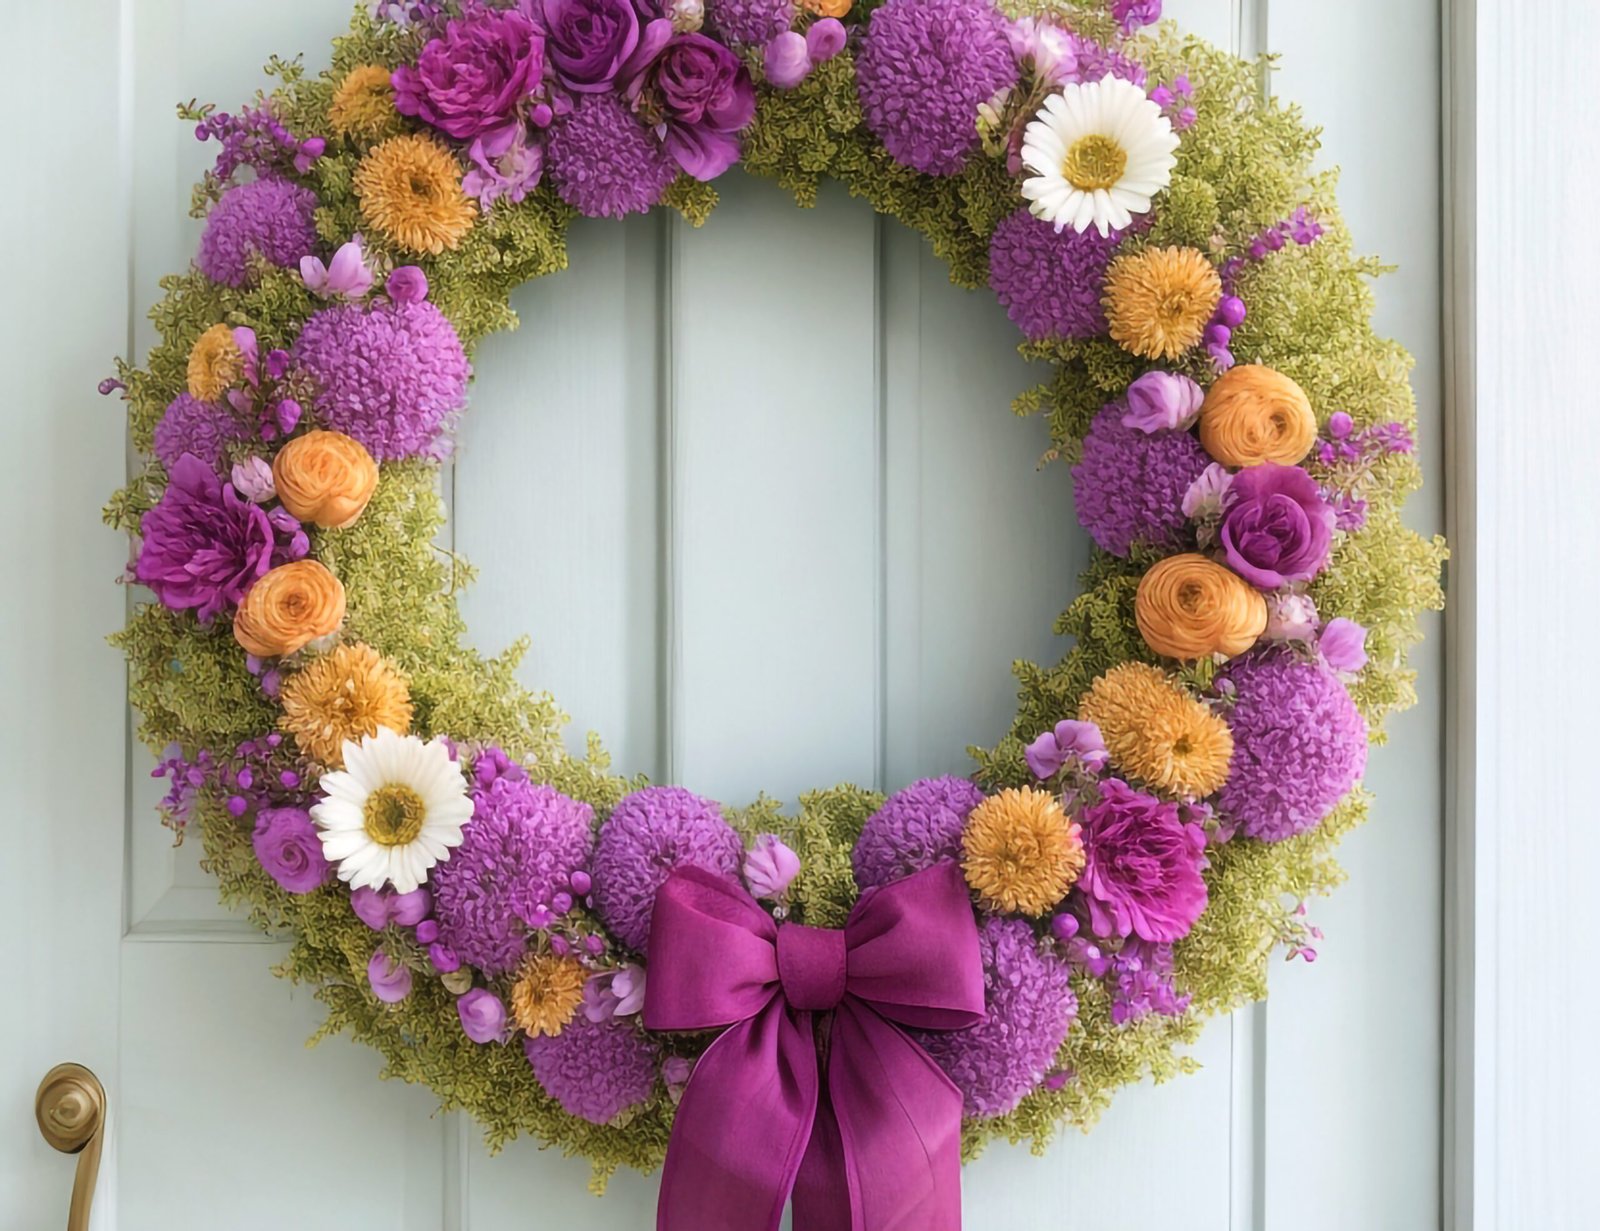 Summer floral wreath on front door.